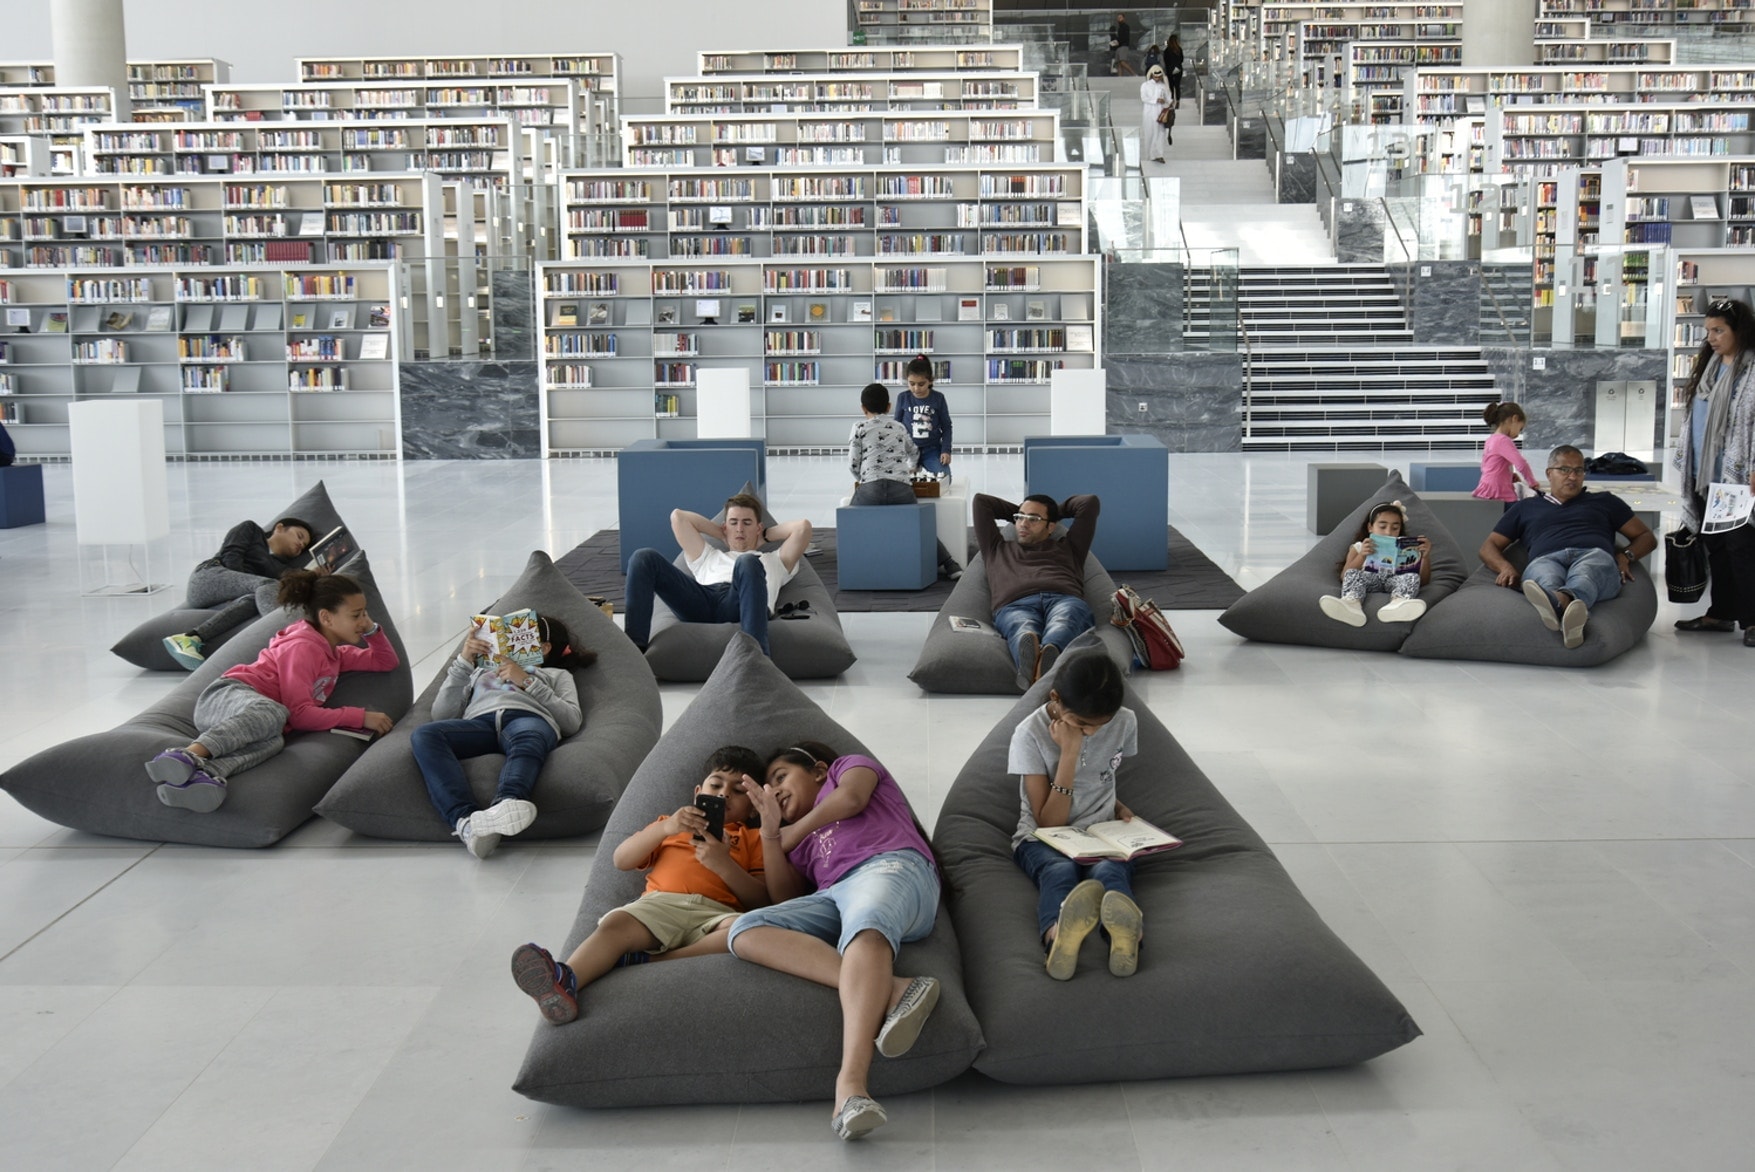 렘 콜하스 x OMA 설계 카타르 국립 중앙 도서관 개관 qatar national library rem koolhaas oma 2018